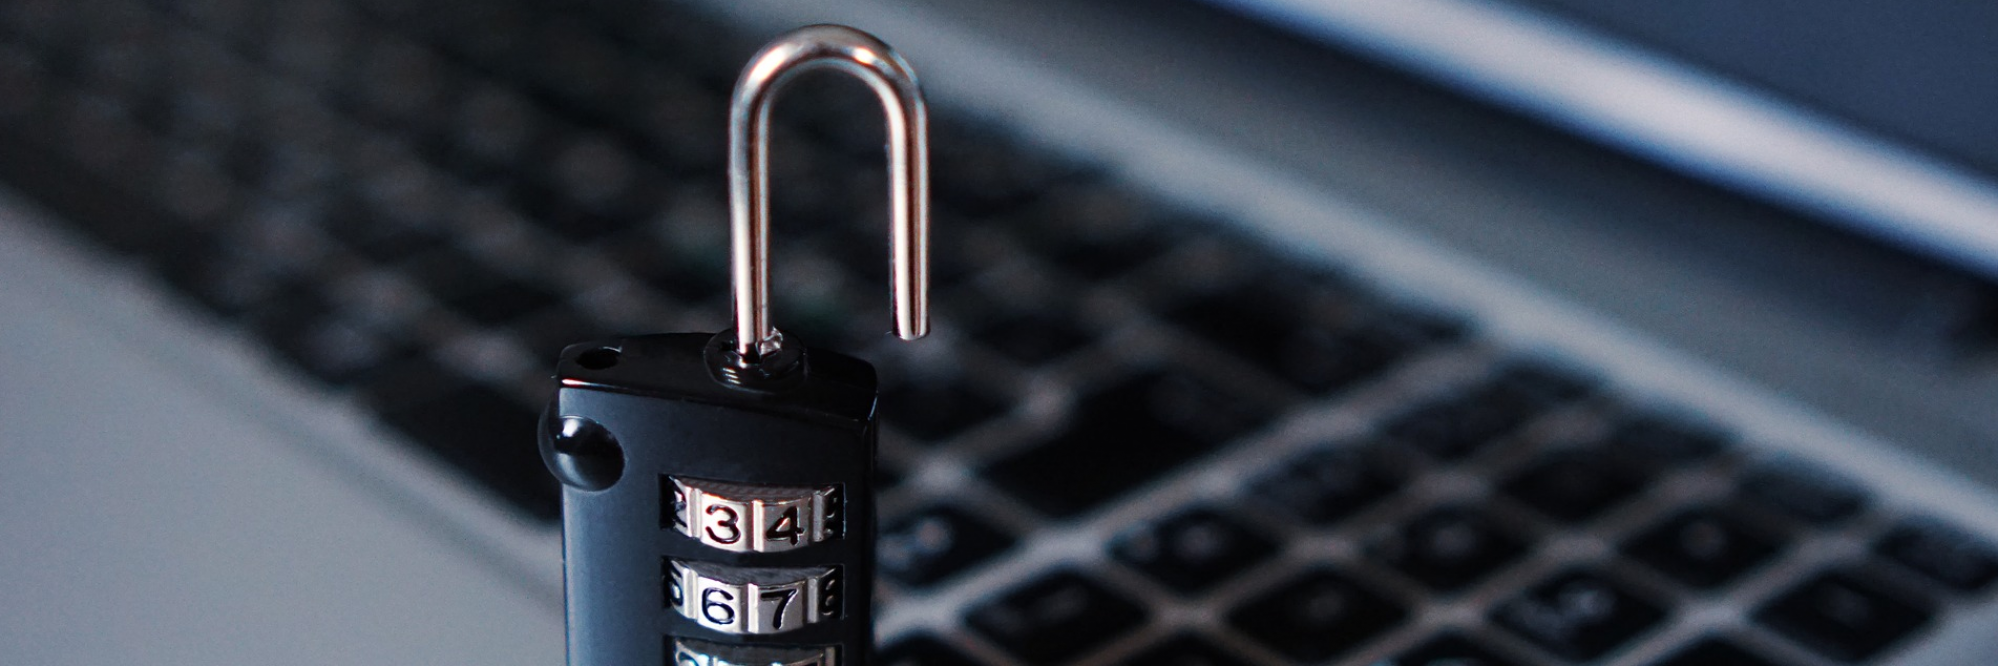 3 Schritte zu mehr Cybersicherheit im Betrieb